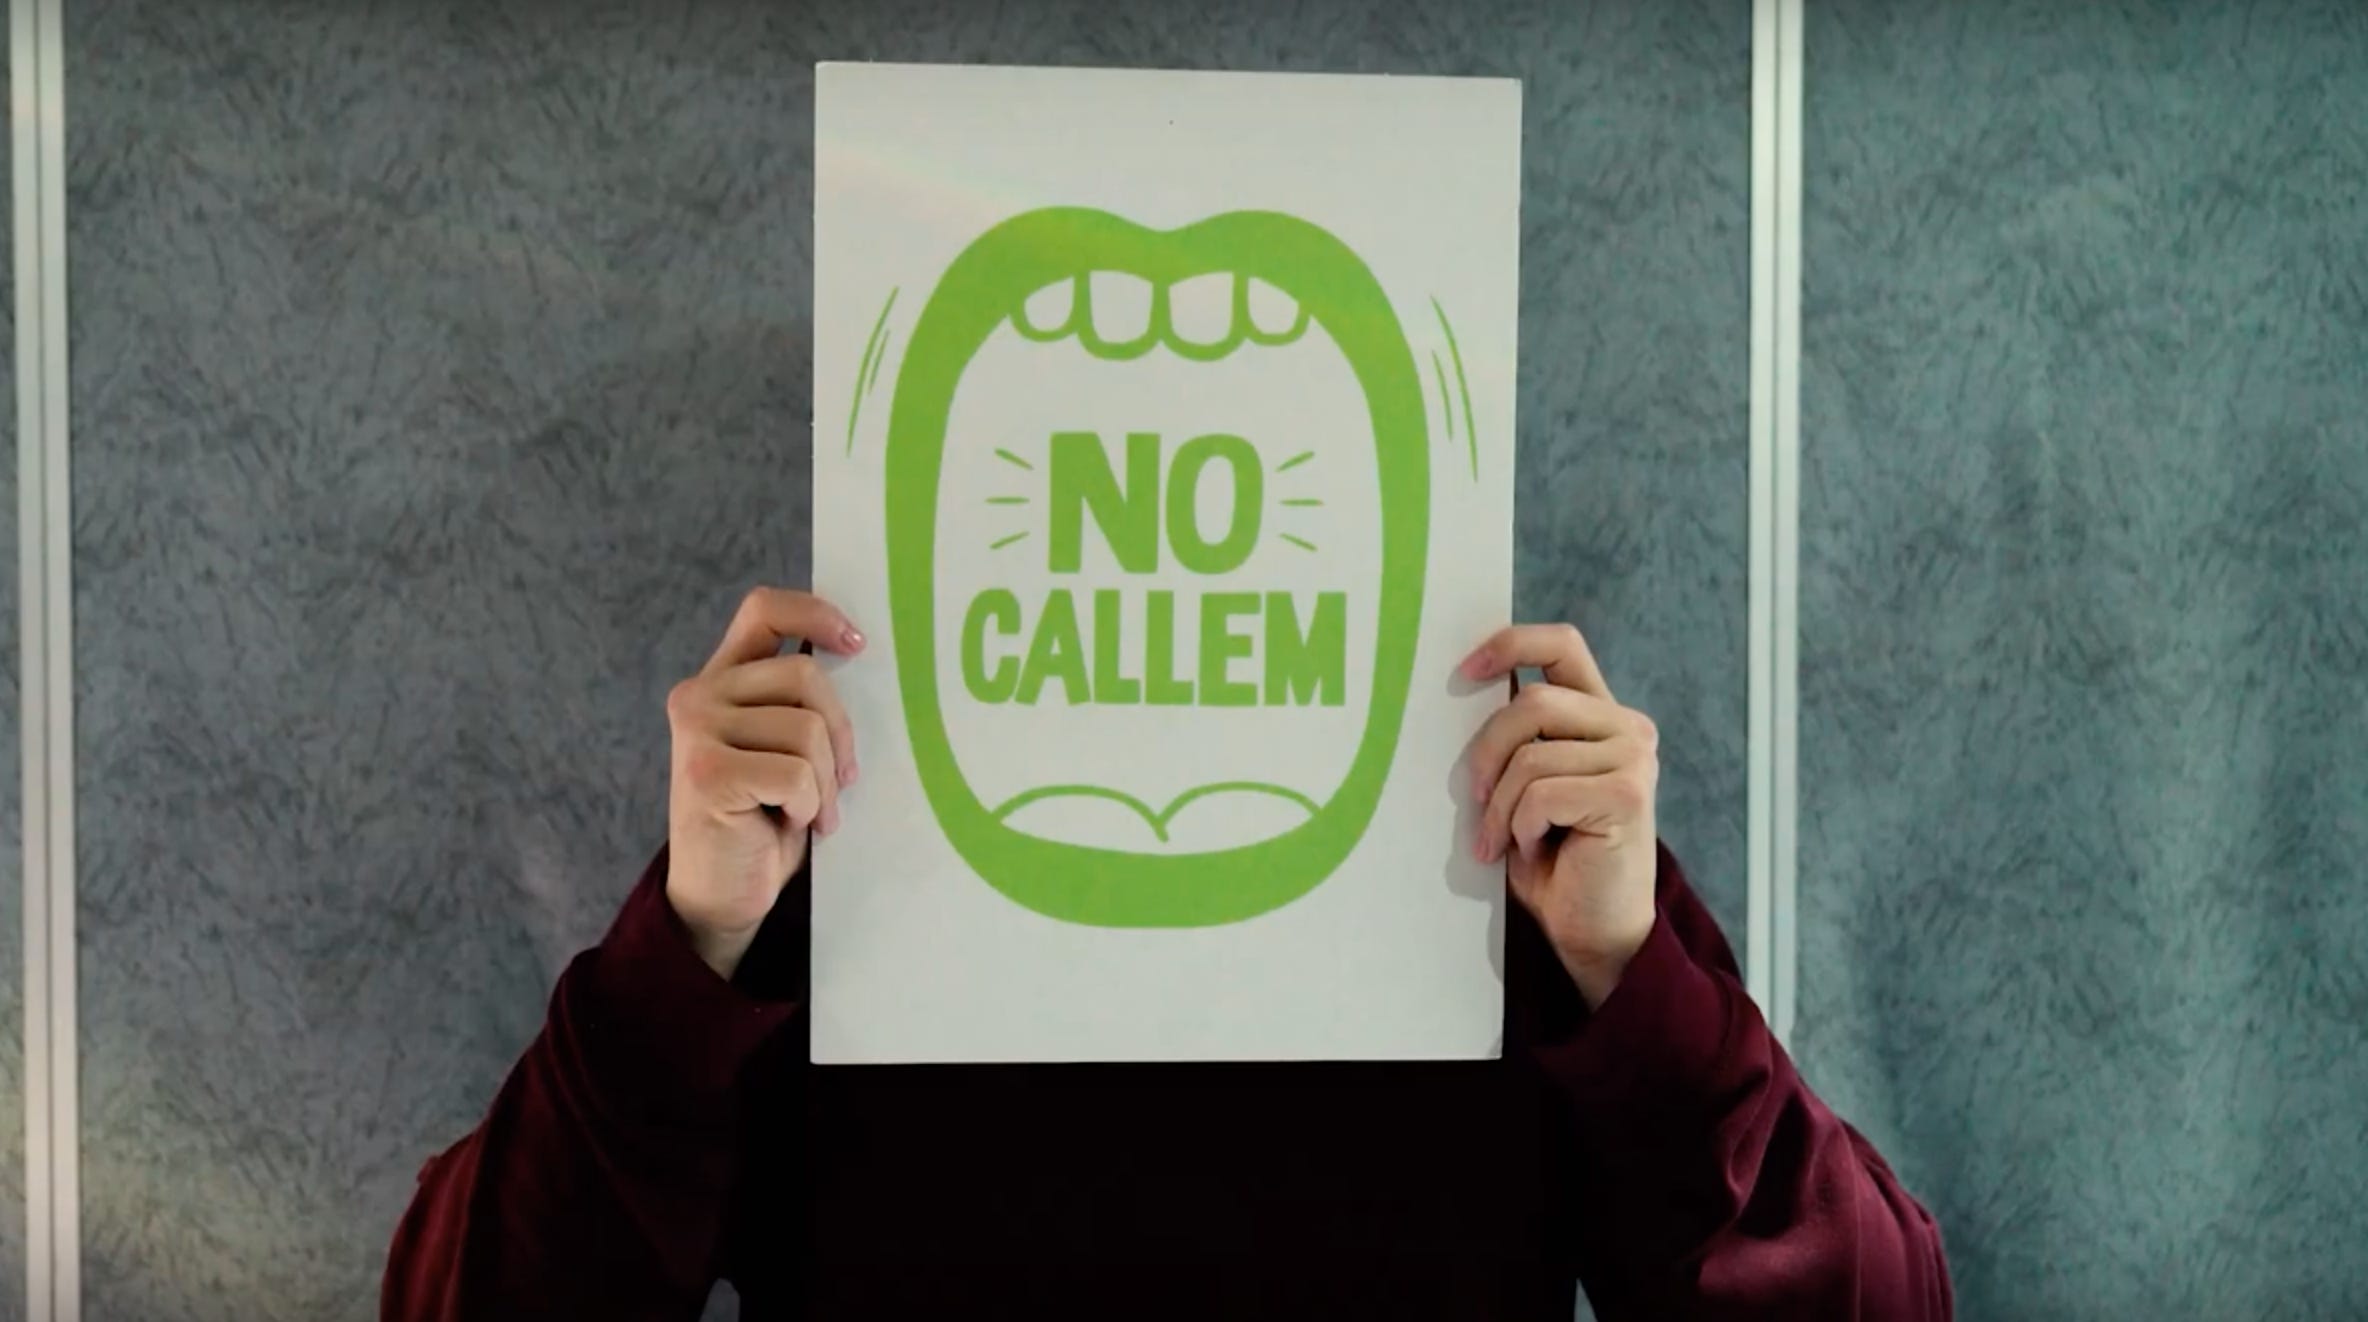 Schermata del video "Barcelona Ciutat Feminista" del comune di Barcellona: un cartello bianco con al centro l'illustrazione verde di una bocca spalancata e le parole NO CALLEM, non stiamo zitte.